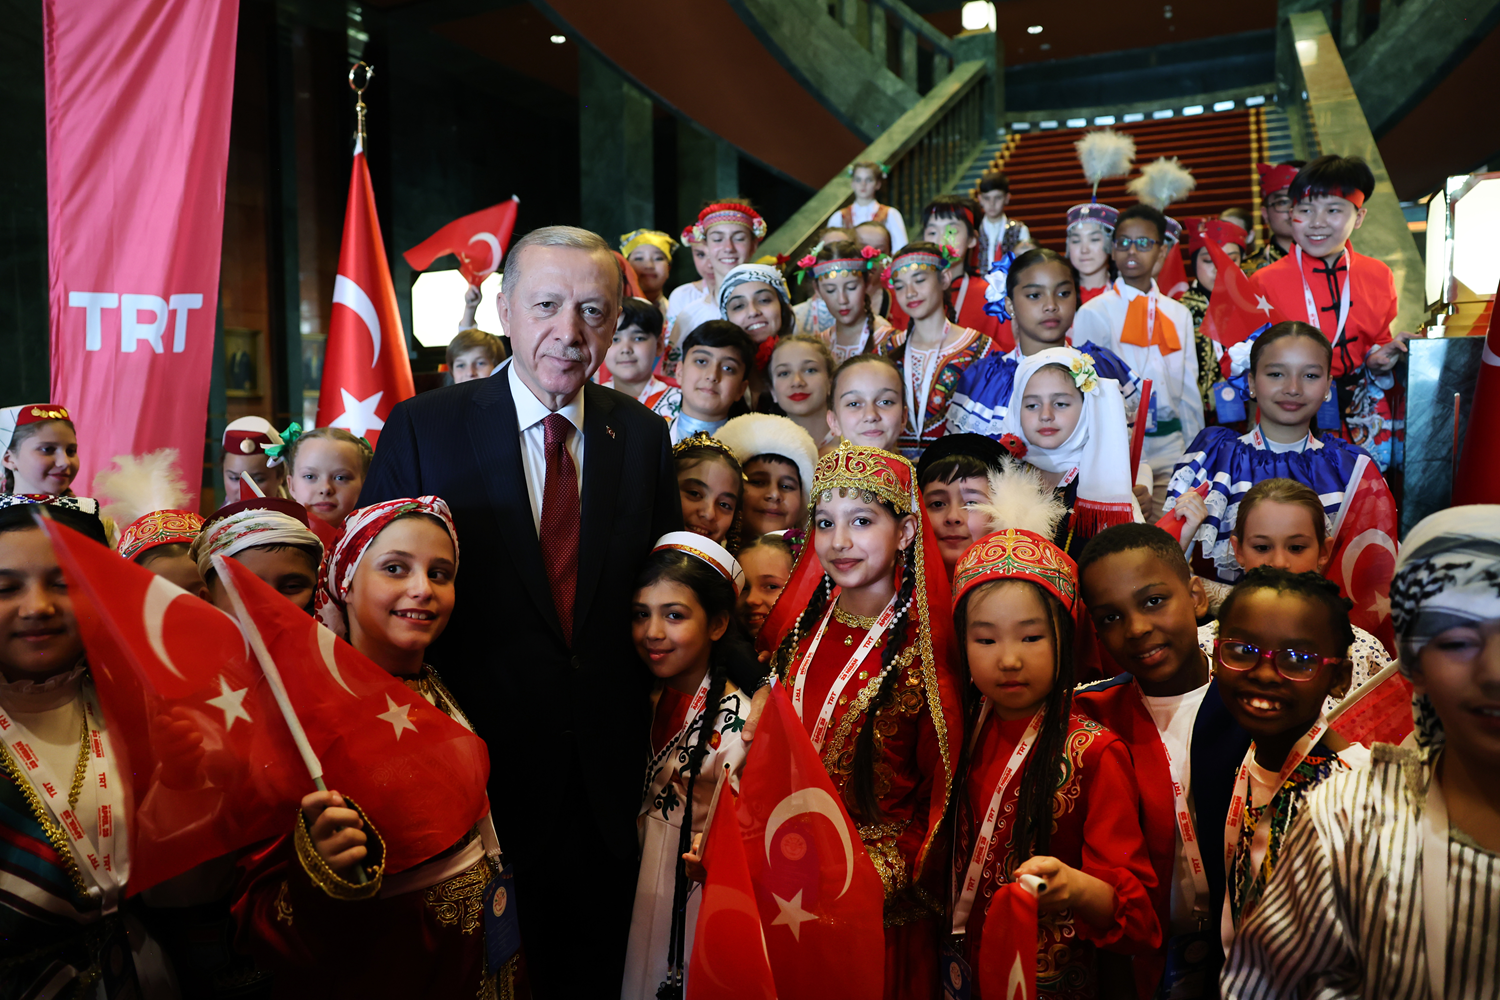 Külliye'de 23 Nisan coşkusu! Cumhurbaşkanı Erdoğan, çocuklarla bir araya geldi 